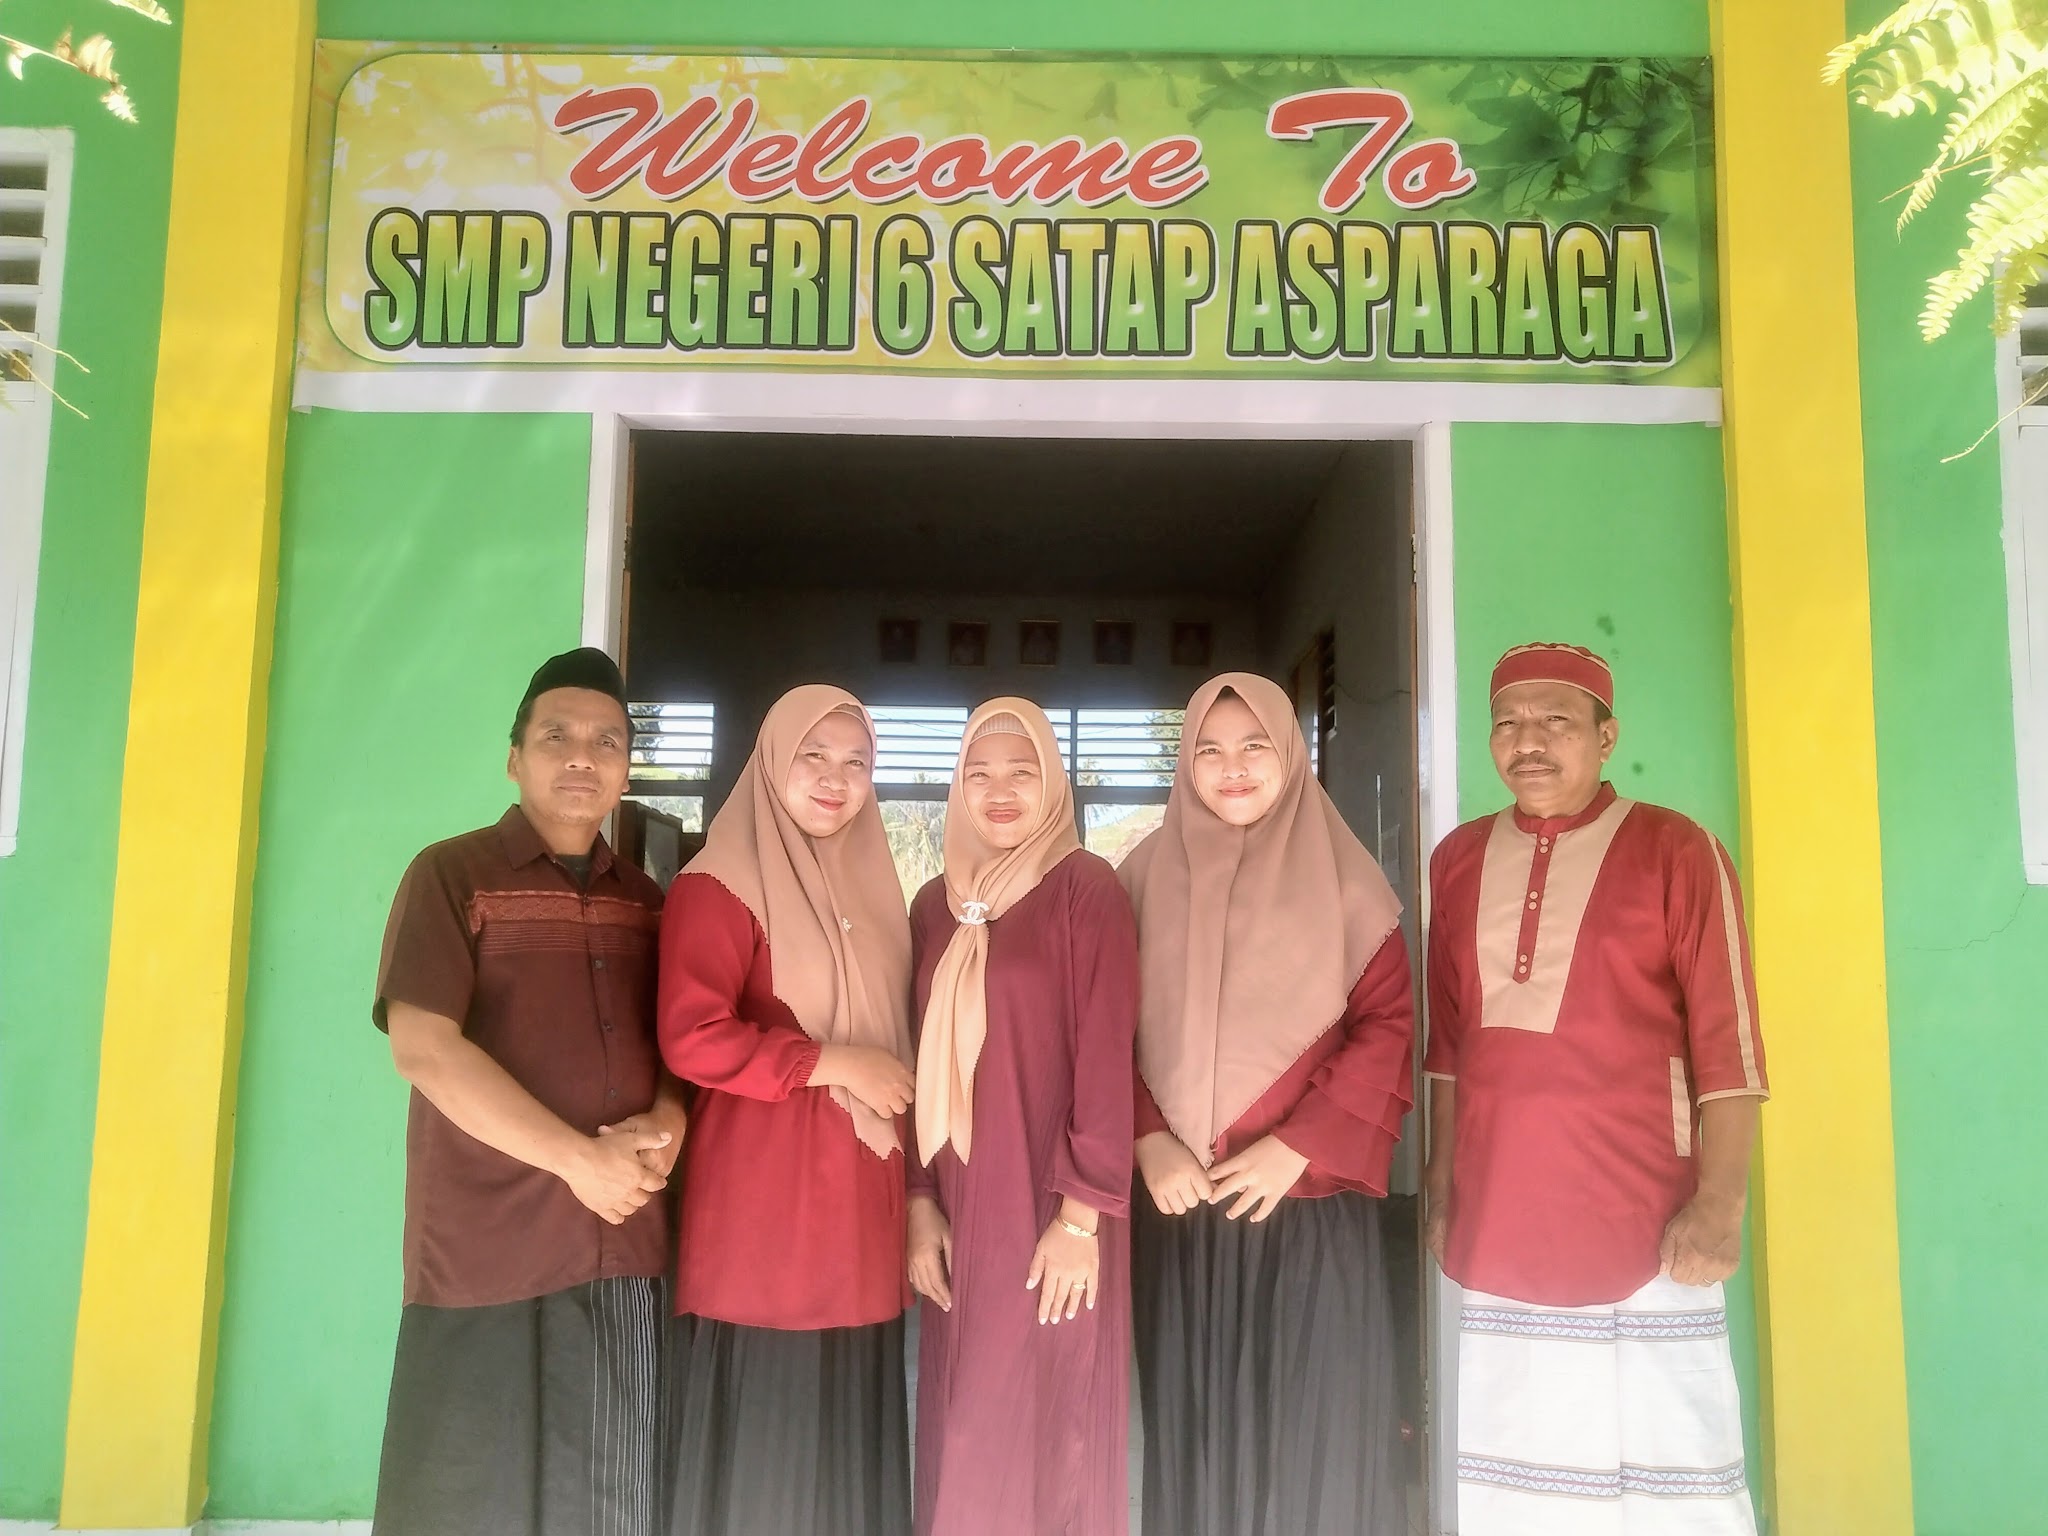 Foto SMP  Negeri 6 Satap Asparaga, Kab. Gorontalo